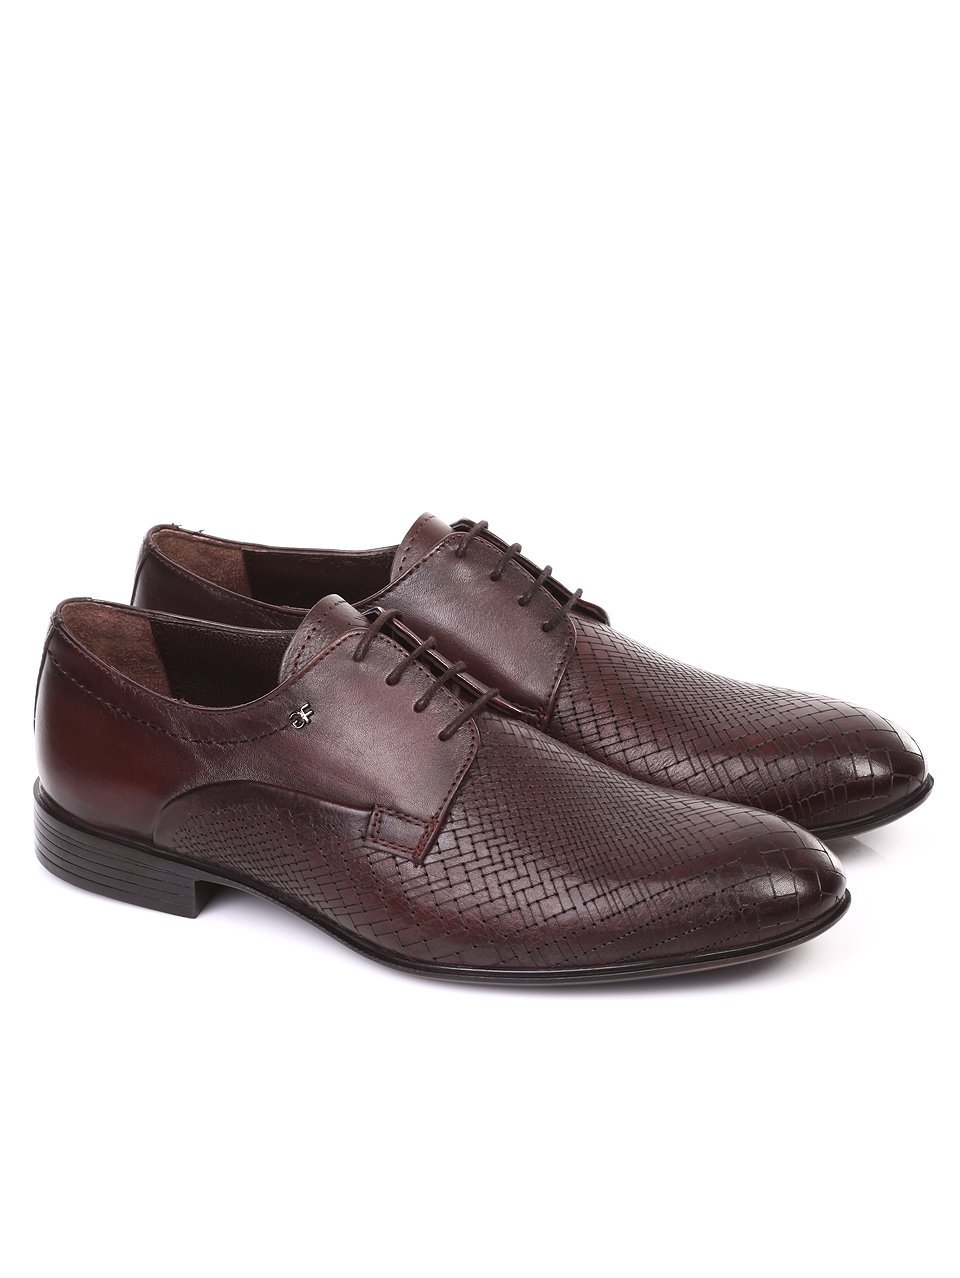 Елегантни мъжки обувки от естествена кожа 7AT-18519 brown